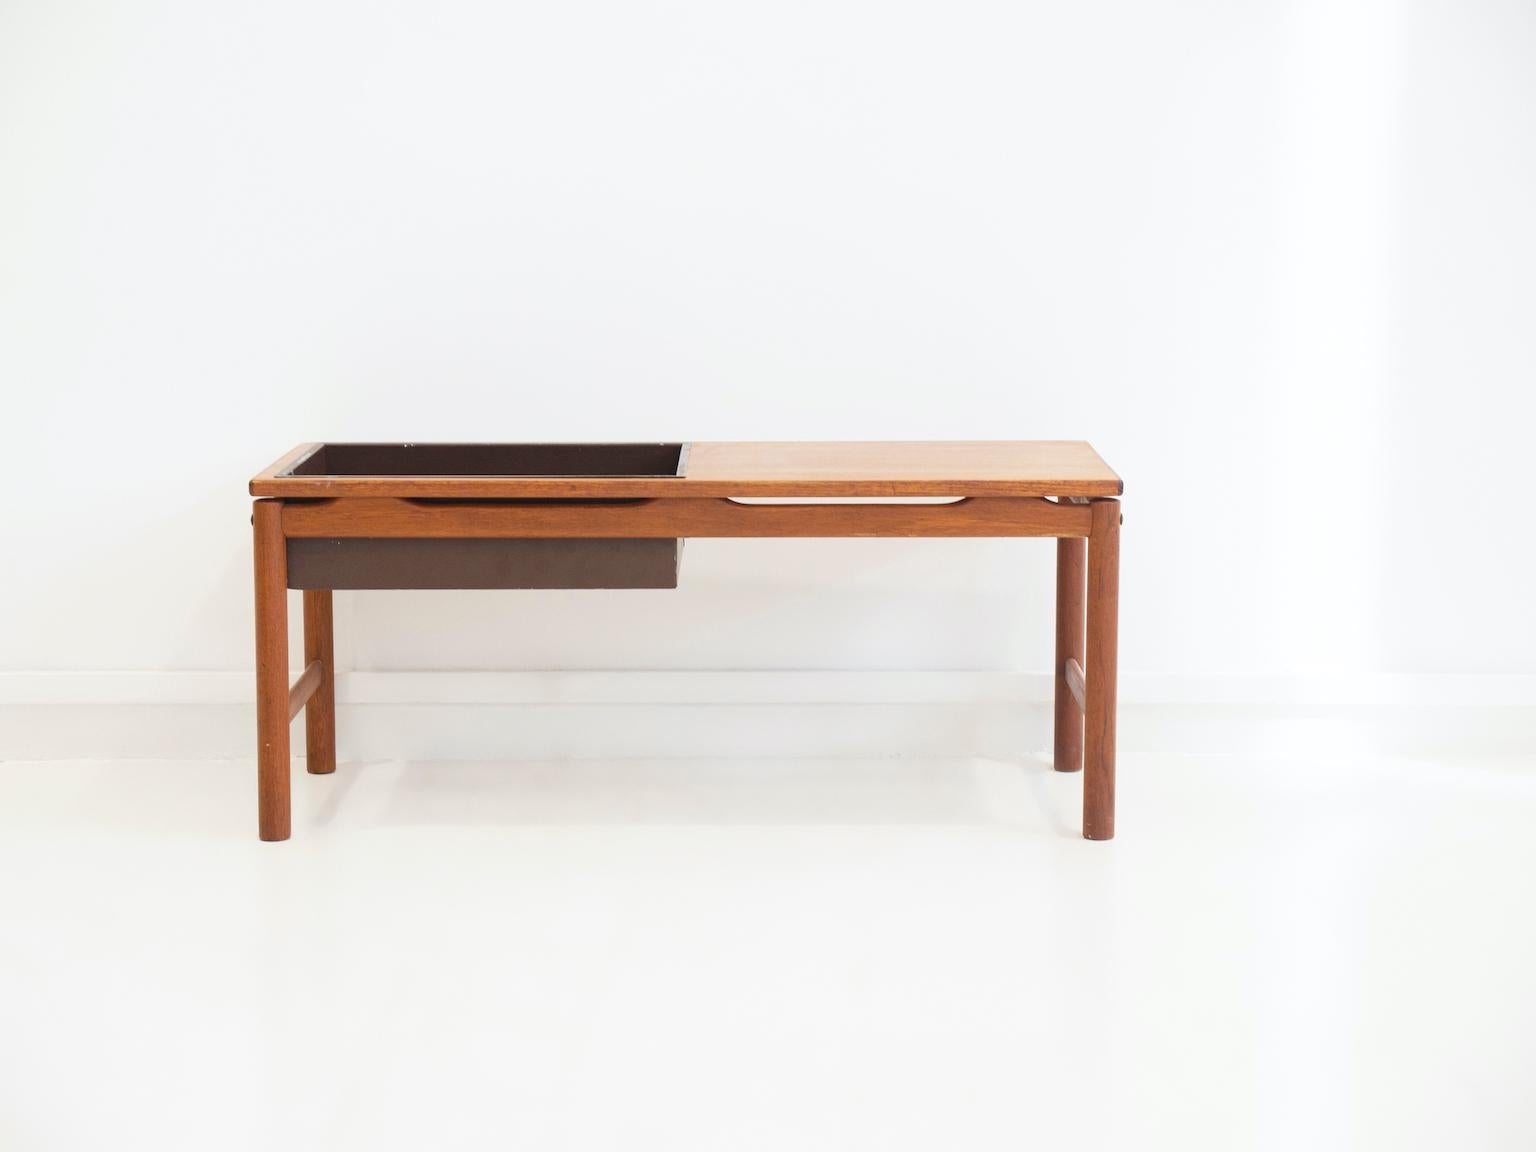 Table en bois de teck avec boîte en métal peinte en brun foncé pour les plantes. Fabriqué en Suède par HMB Rövik Furniture vers 1960.